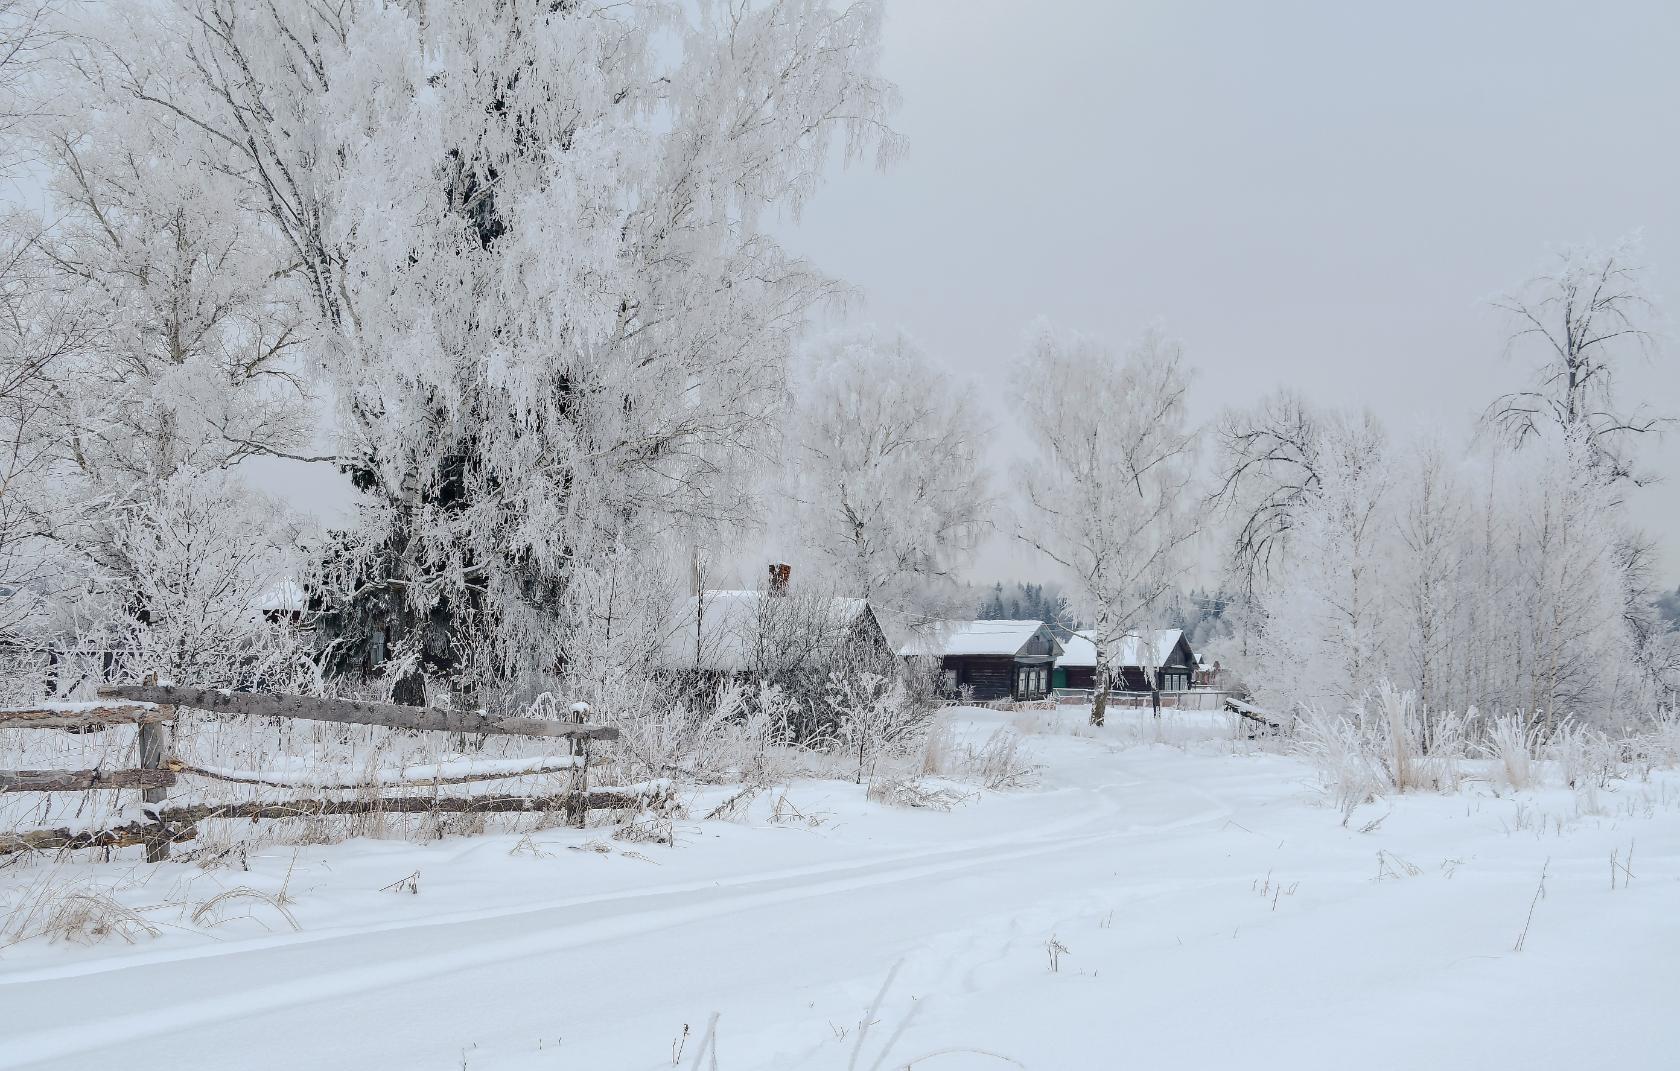 Хороша моя деревня Зимнем да морозным днём! В белом инее деревья Чистый снег лежит ковром!